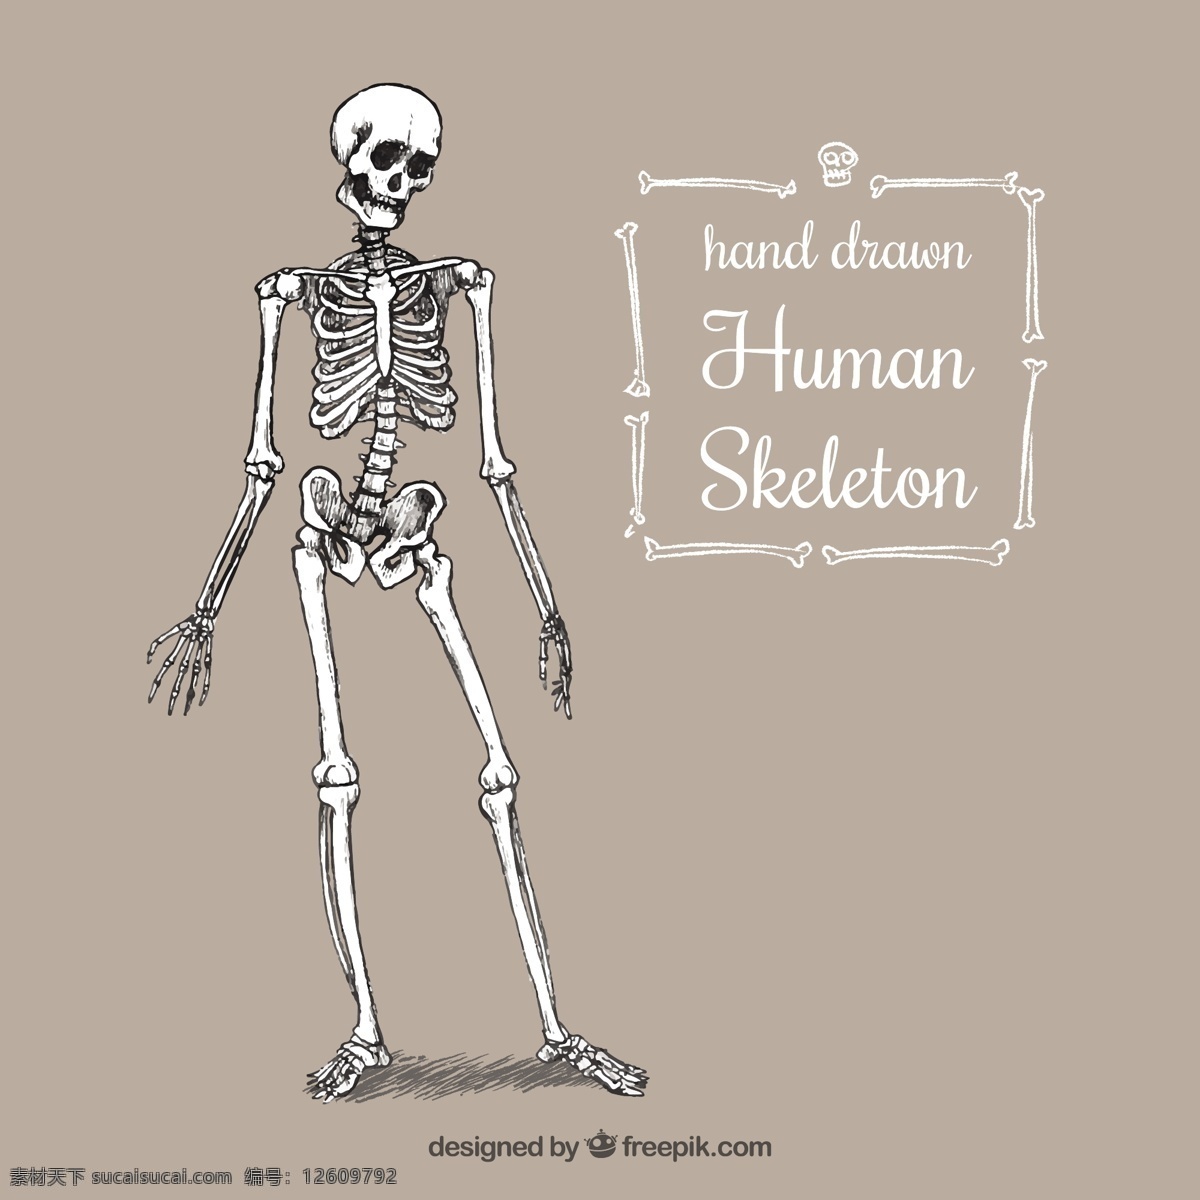 手绘人体骨骼 一方面 手绘 人力 制图 人体骨架 系统绘制 骨头 草图 零件 粗略的 身体的一部分 头盖骨 骨骼 灰色